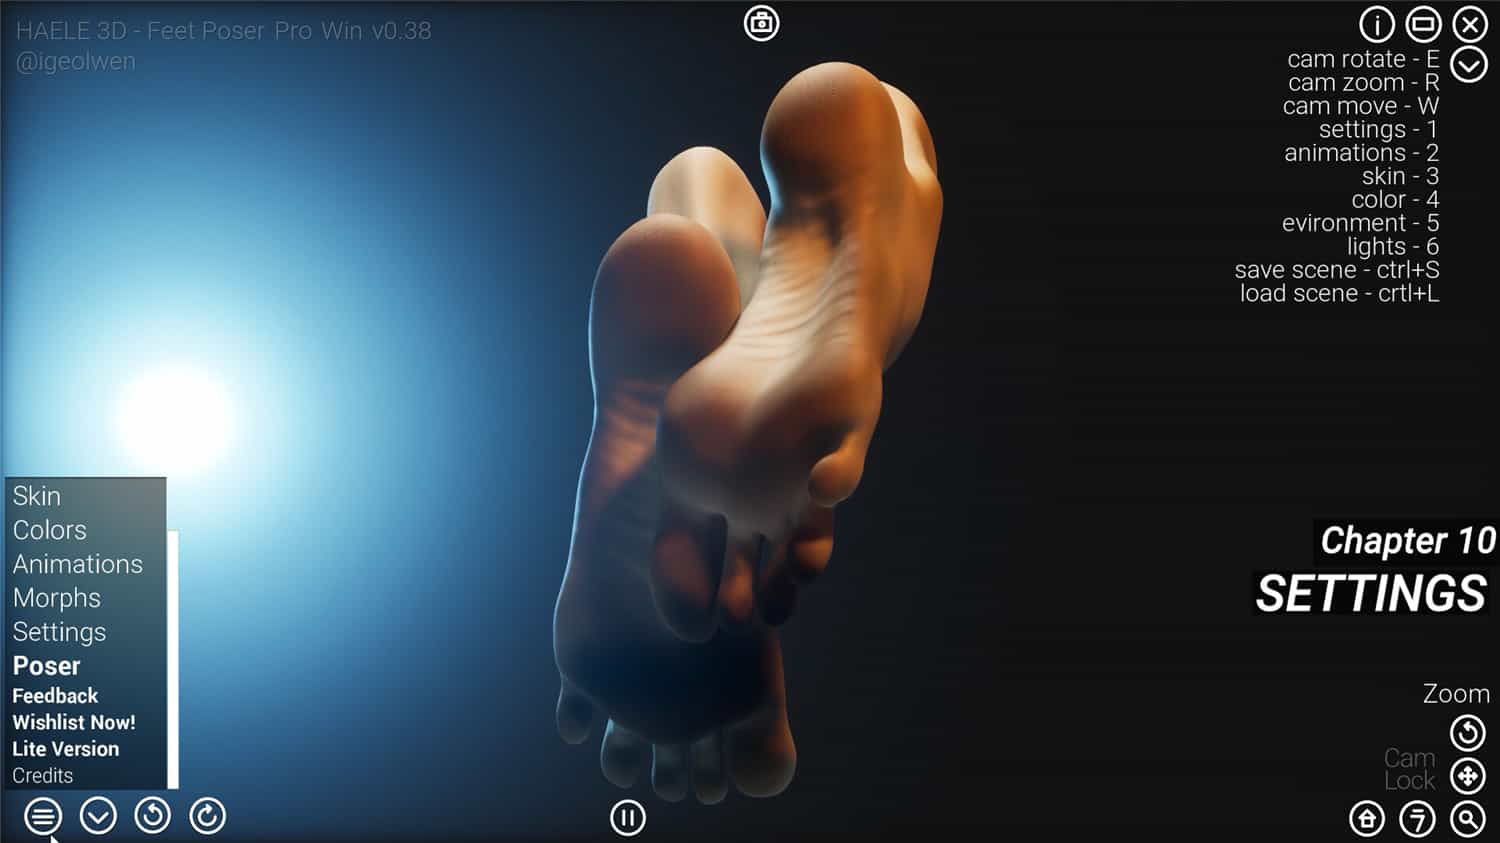 足部造型模拟器 - 专业版/HAELE 3D - Feet Poser Pro插图3